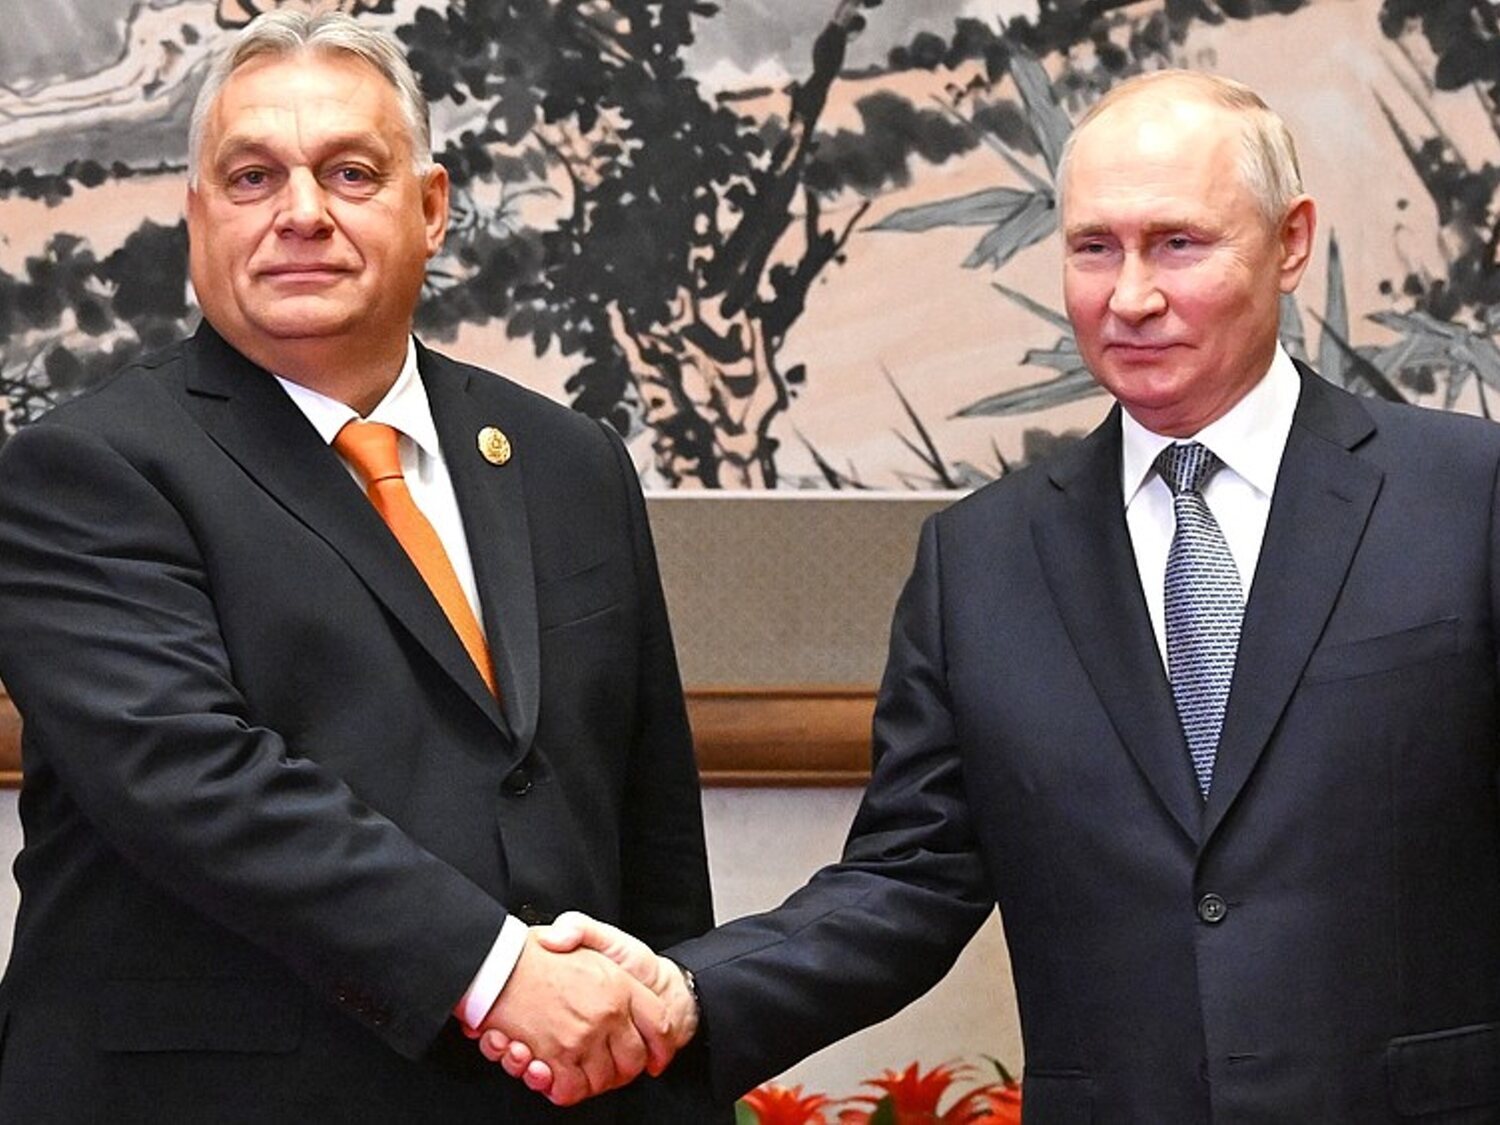 Viktor Orbán rompe la unidad de la UE y se convierte en el primer presidente en reunirse con Putin